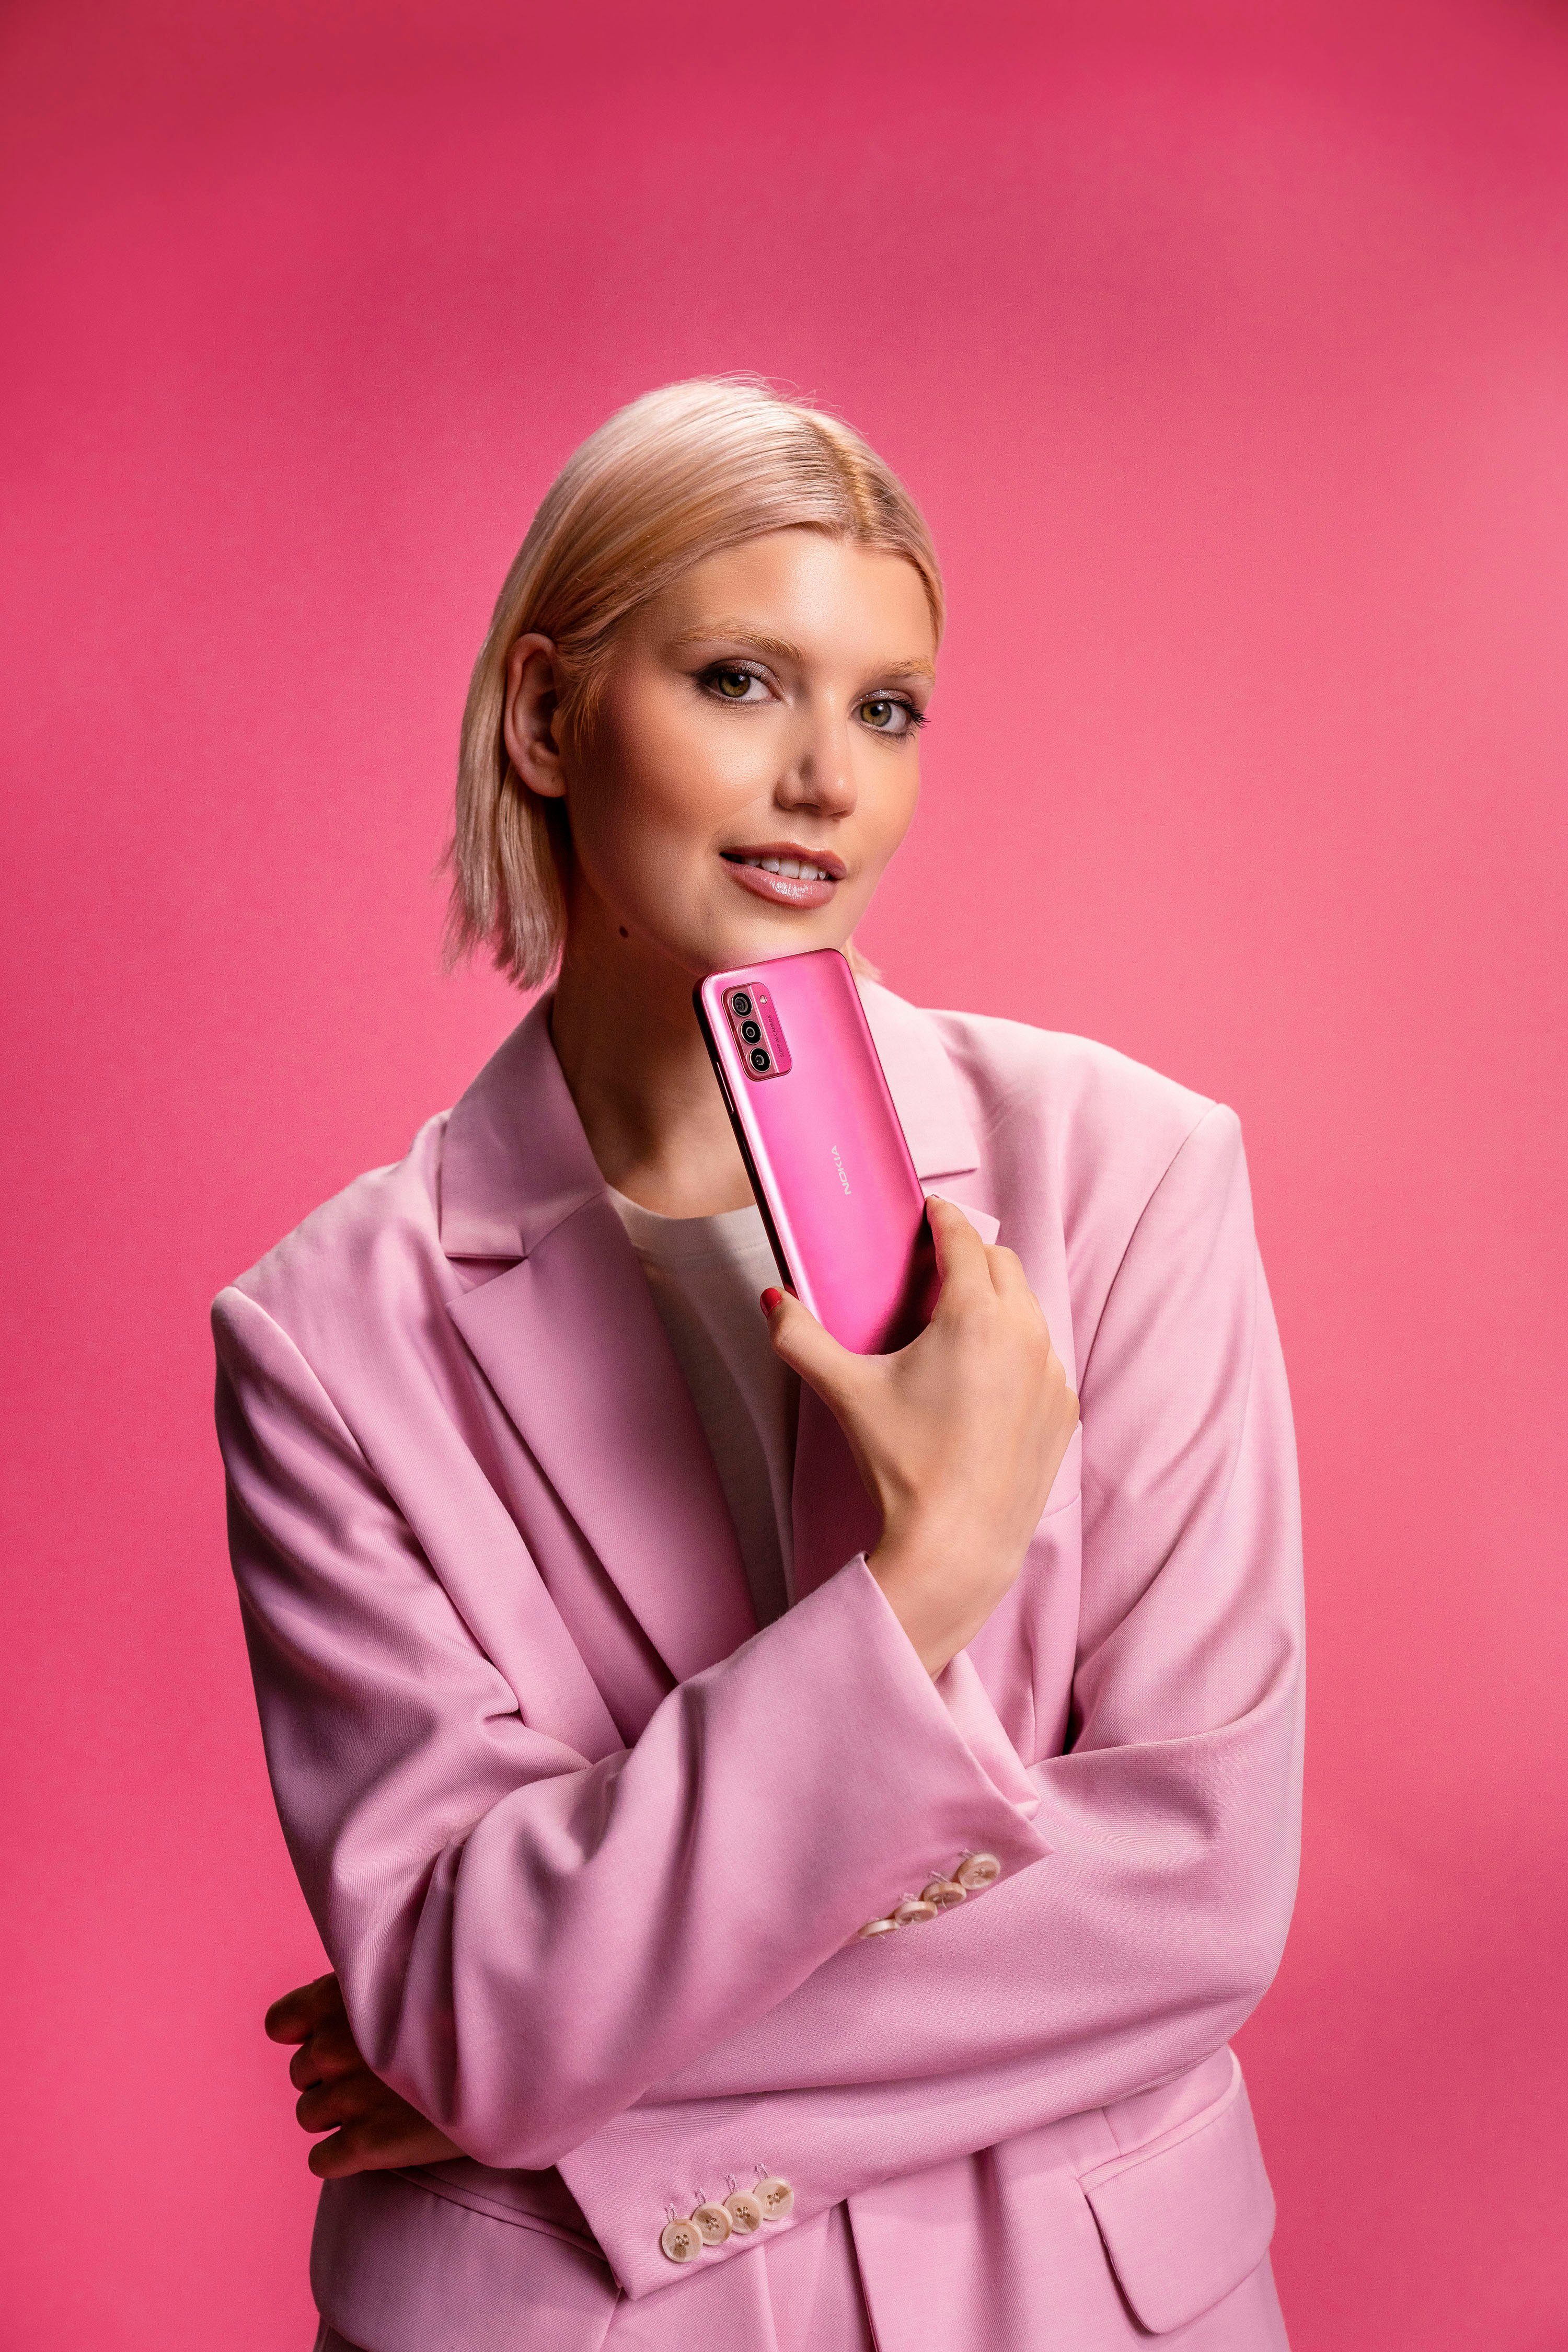 Zoll, Smartphone GB Speicherplatz, (16,9 G42 cm/6,65 Nokia 128 Kamera) MP 50 pink